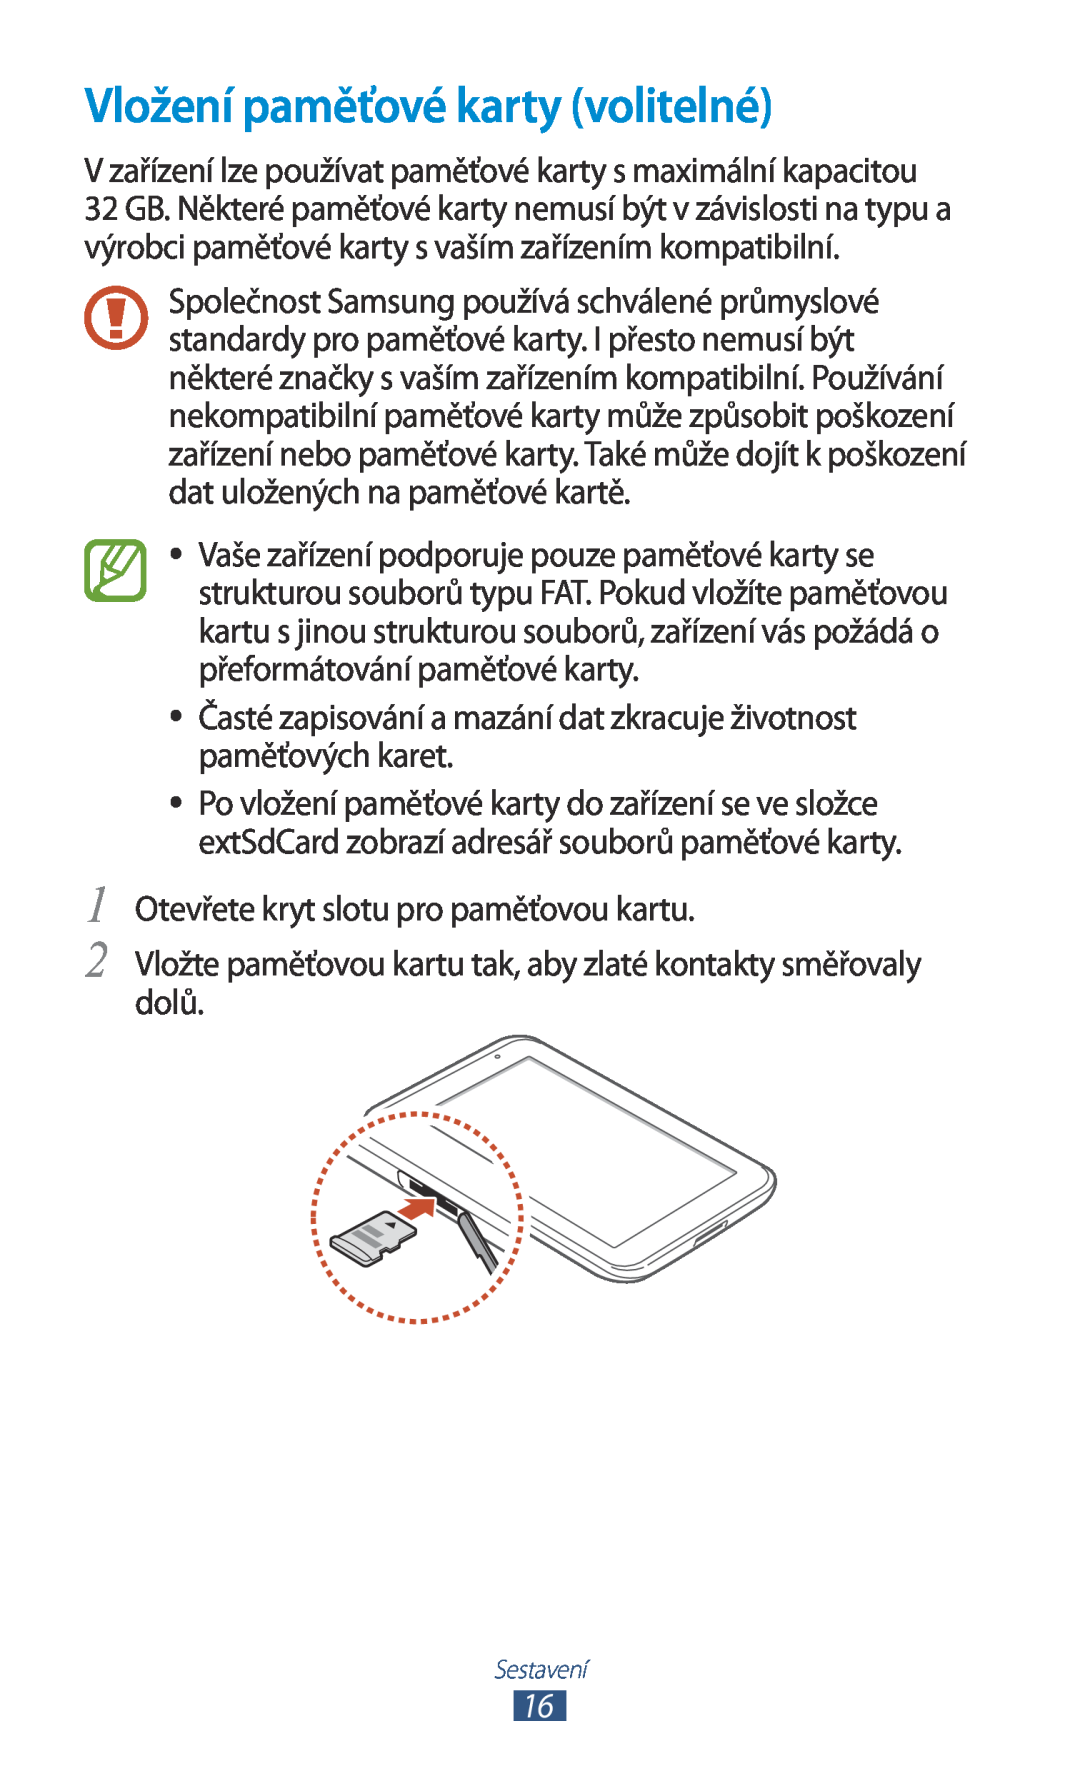 Samsung GT-P3110ZWEO2C Vložení paměťové karty volitelné, V zařízení lze používat paměťové karty s maximální kapacitou 